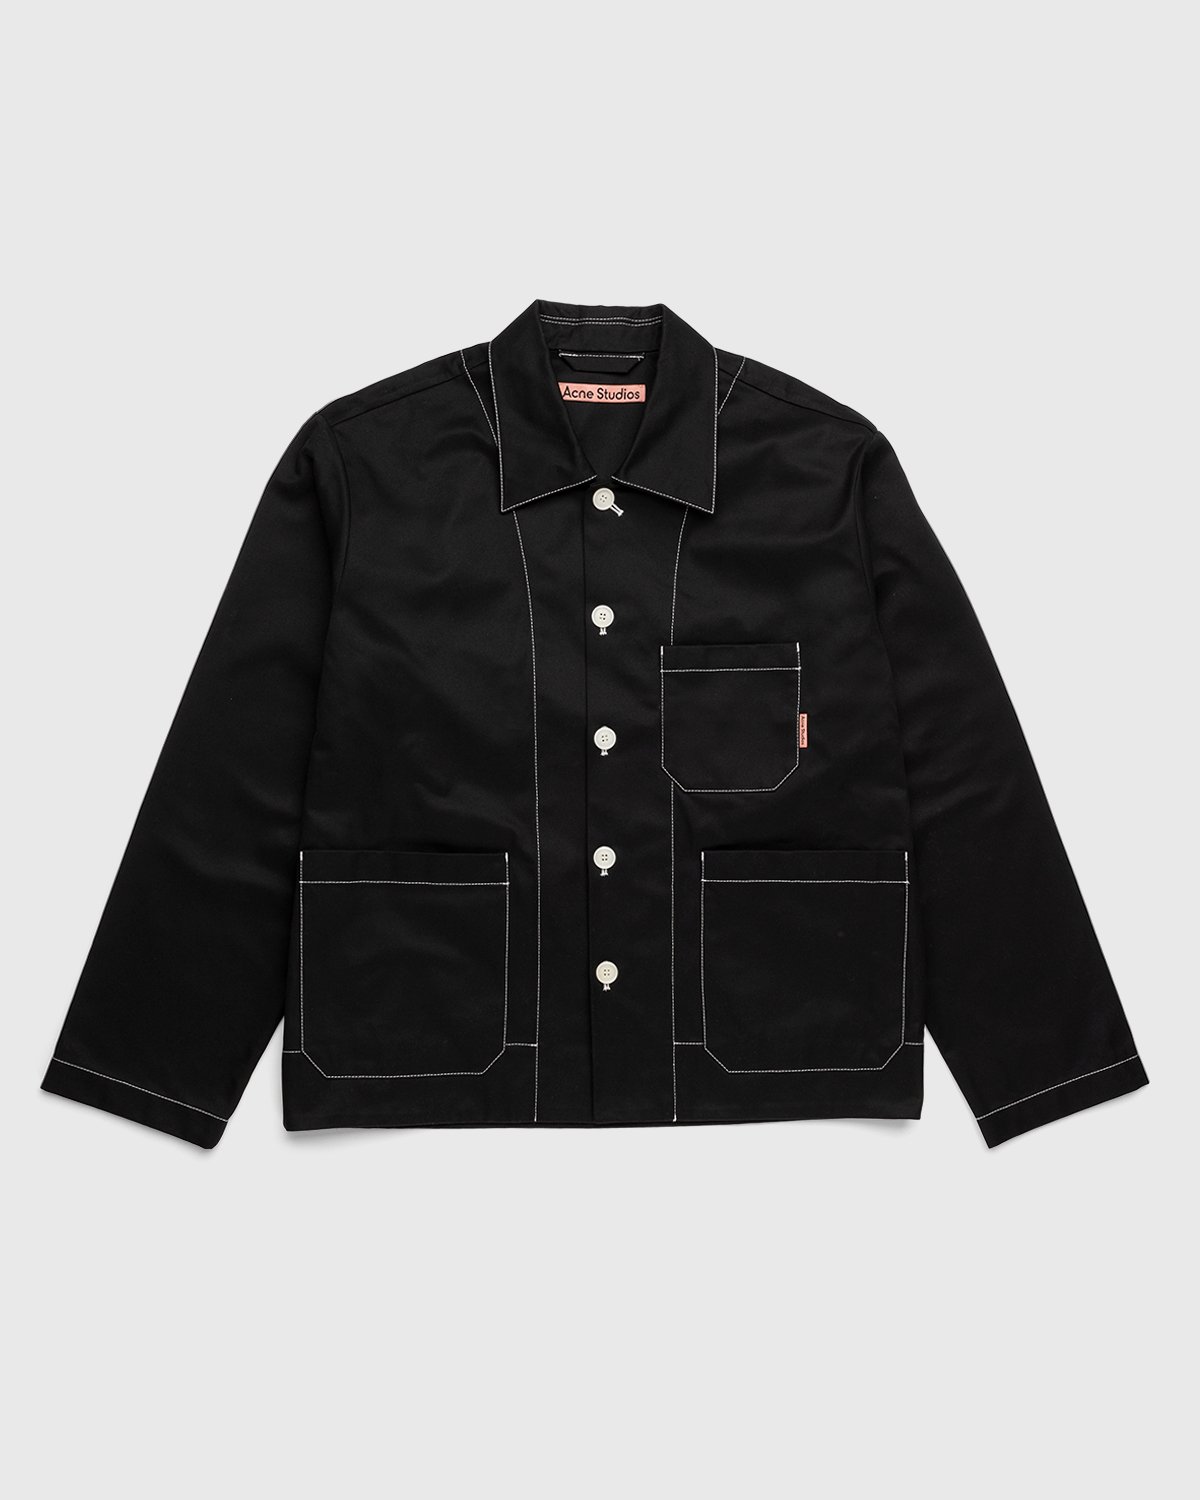 Acne Studios - Heavy Twill Jacket - Clothing - Black - Image 1